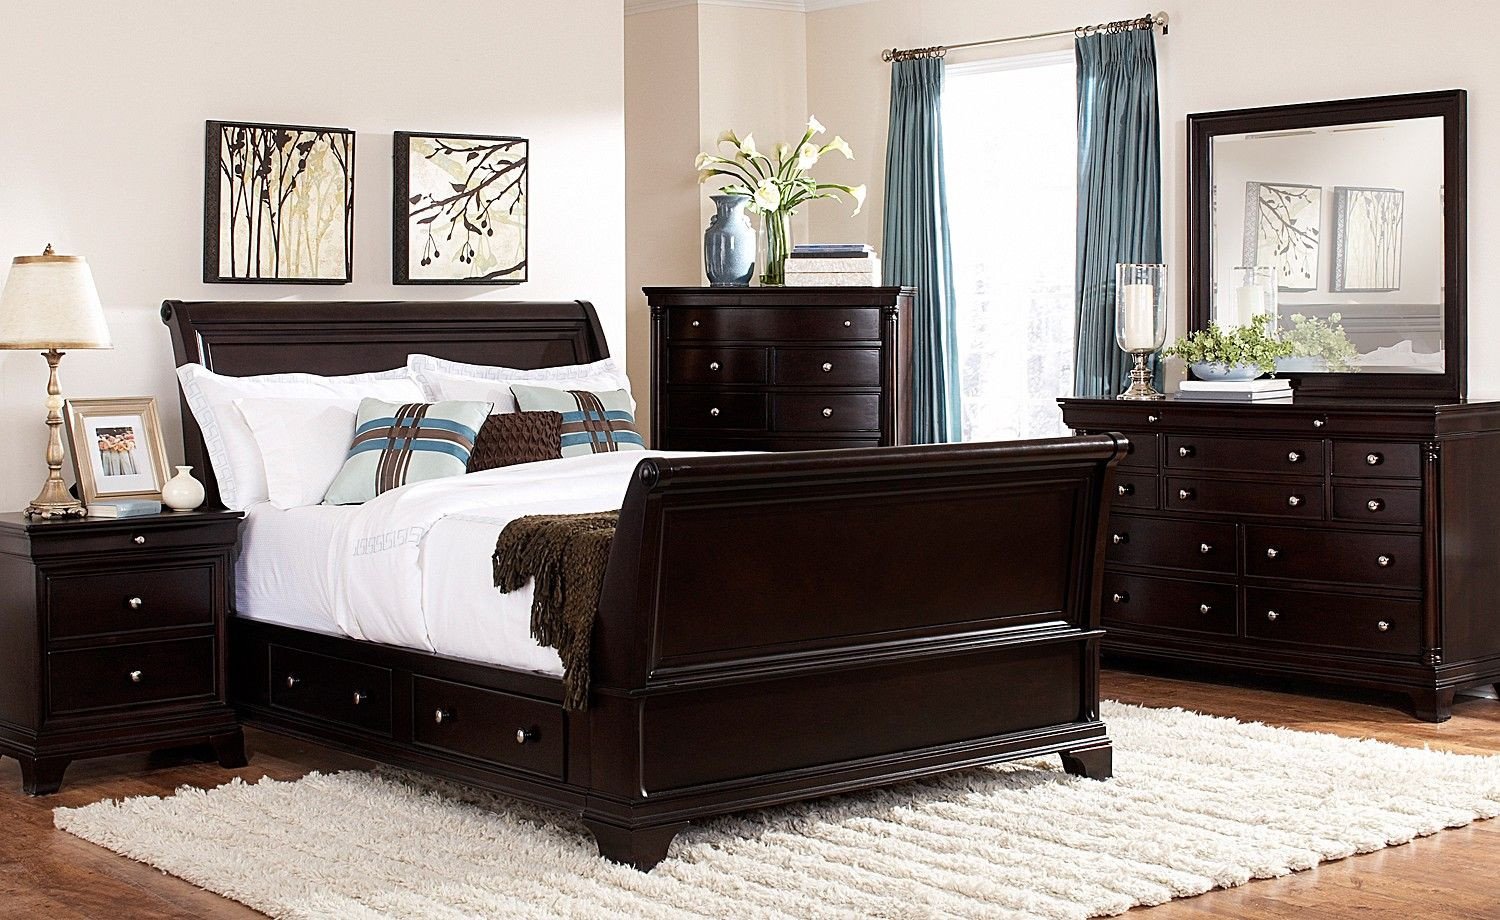 All Black Bedroom Set Best Of Lakeshore Bedroom 7 Pc Queen Storage Bedroom Furniture